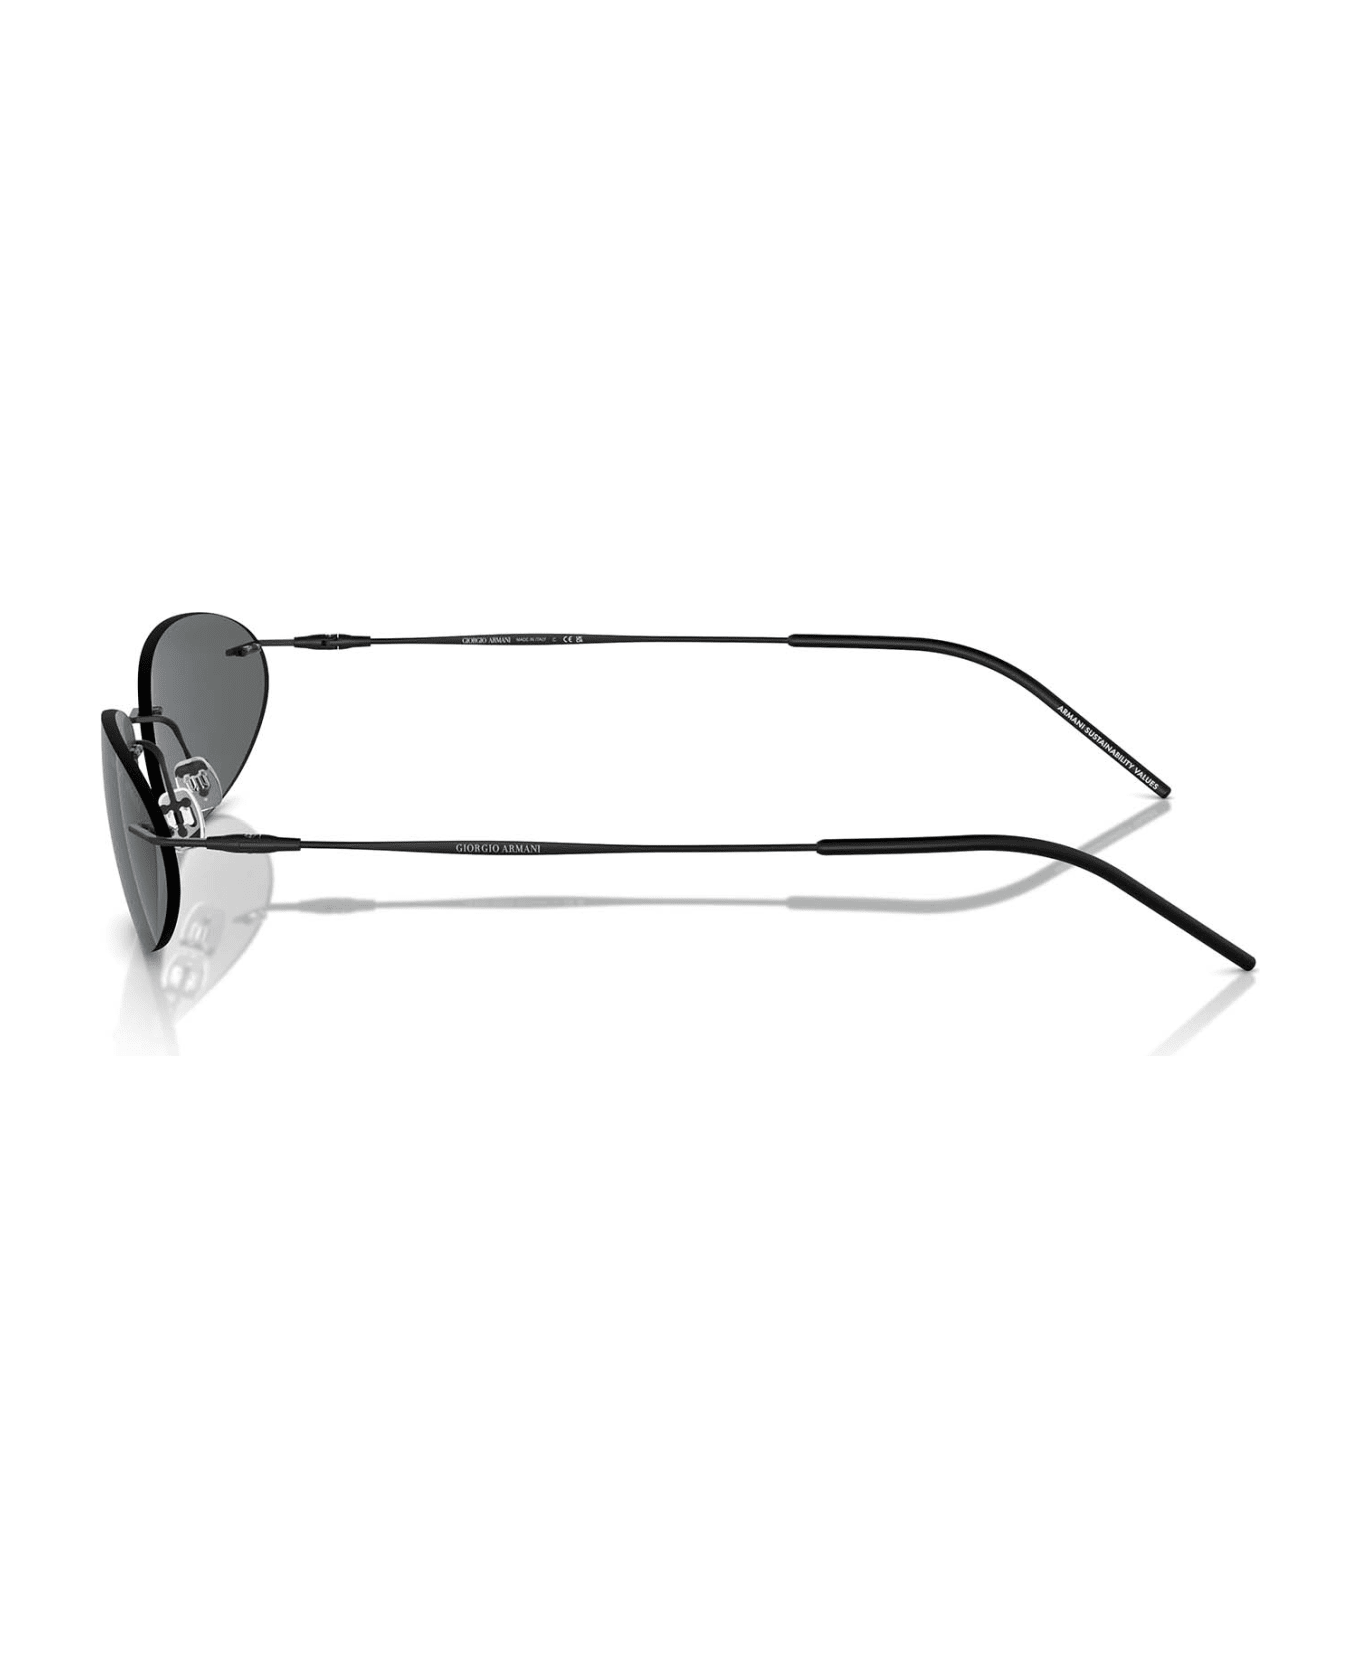 Giorgio Armani Ar1508m Matte Black Sunglasses - Matte Black サングラス